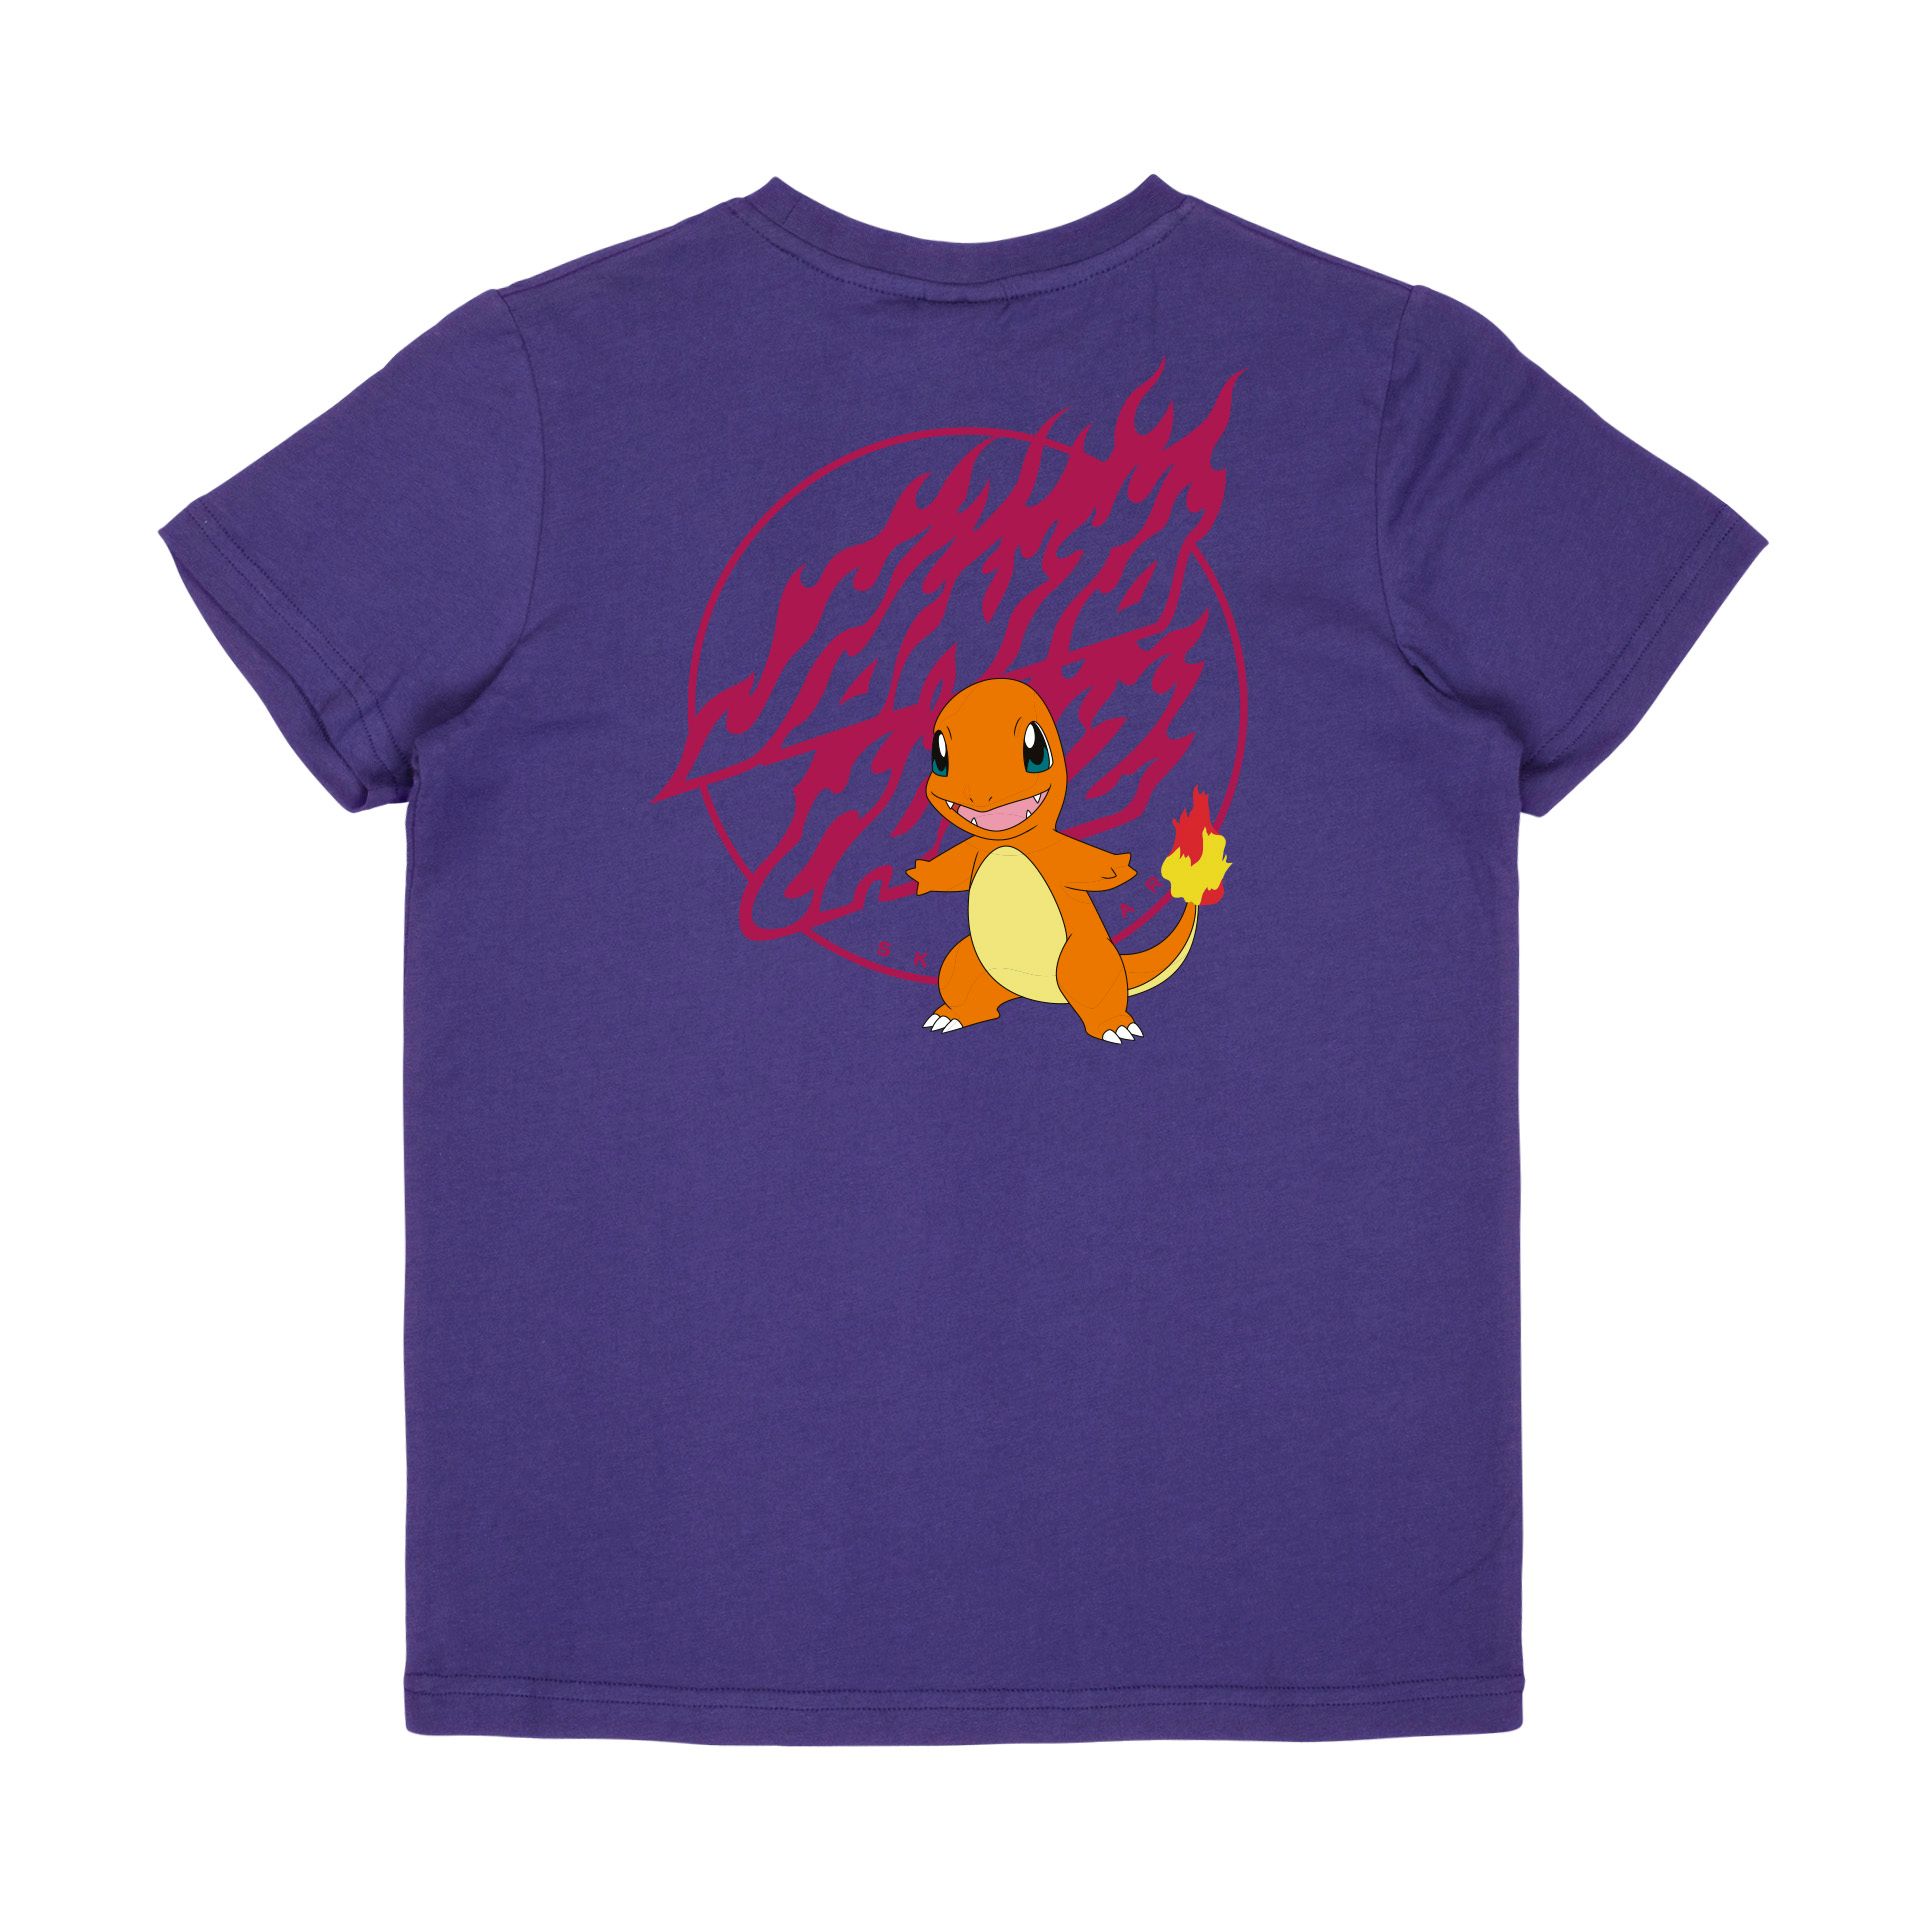 Santa Cruz Charmander youth t-shirt purple